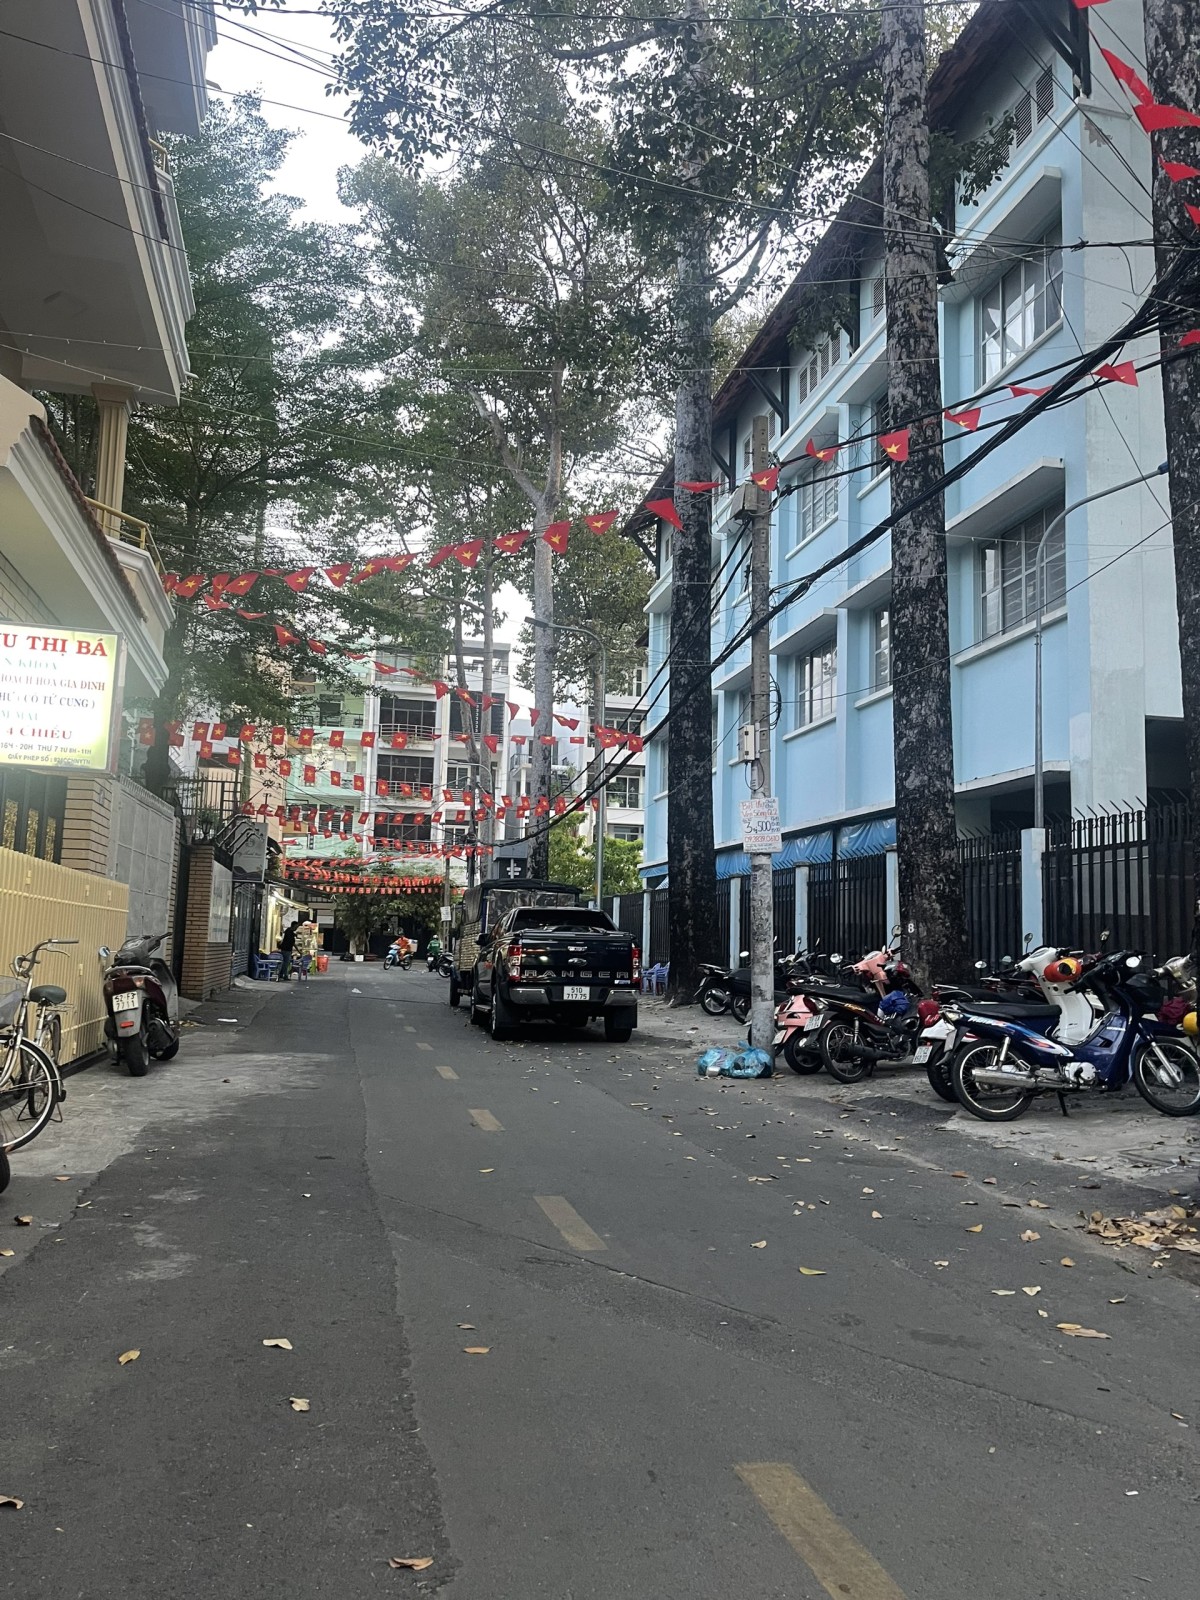 Cho thuê nguyên tầng lầu 1 (2 phòng) khu sầm uất Nguyễn Trãi, Quận 5. Kinh doanh không ở lại